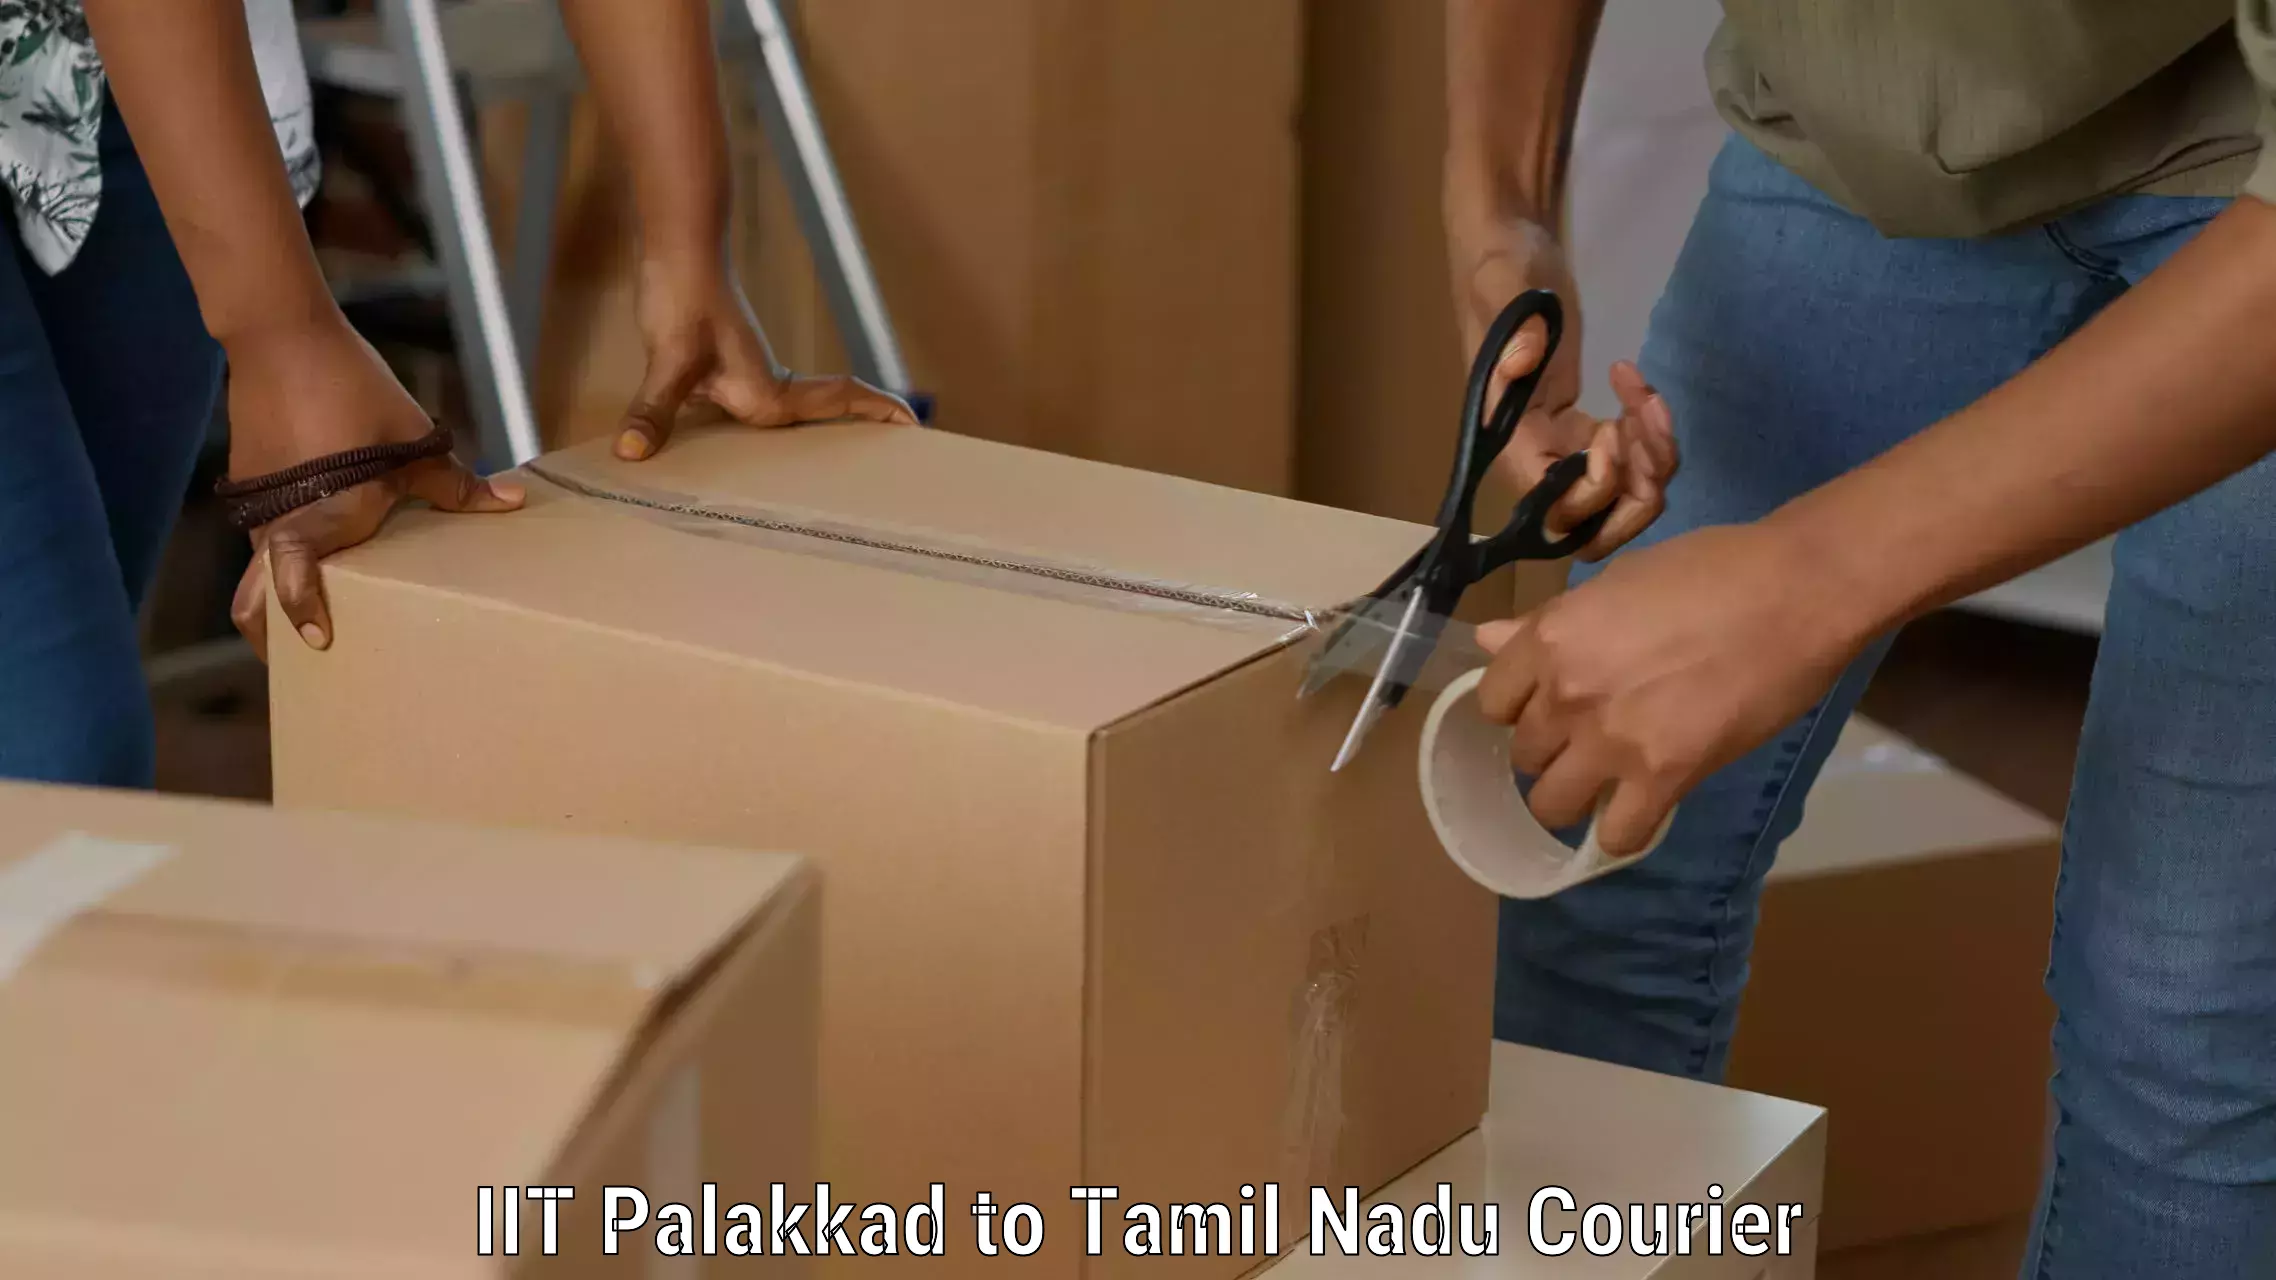 Efficient freight service IIT Palakkad to Tirupur